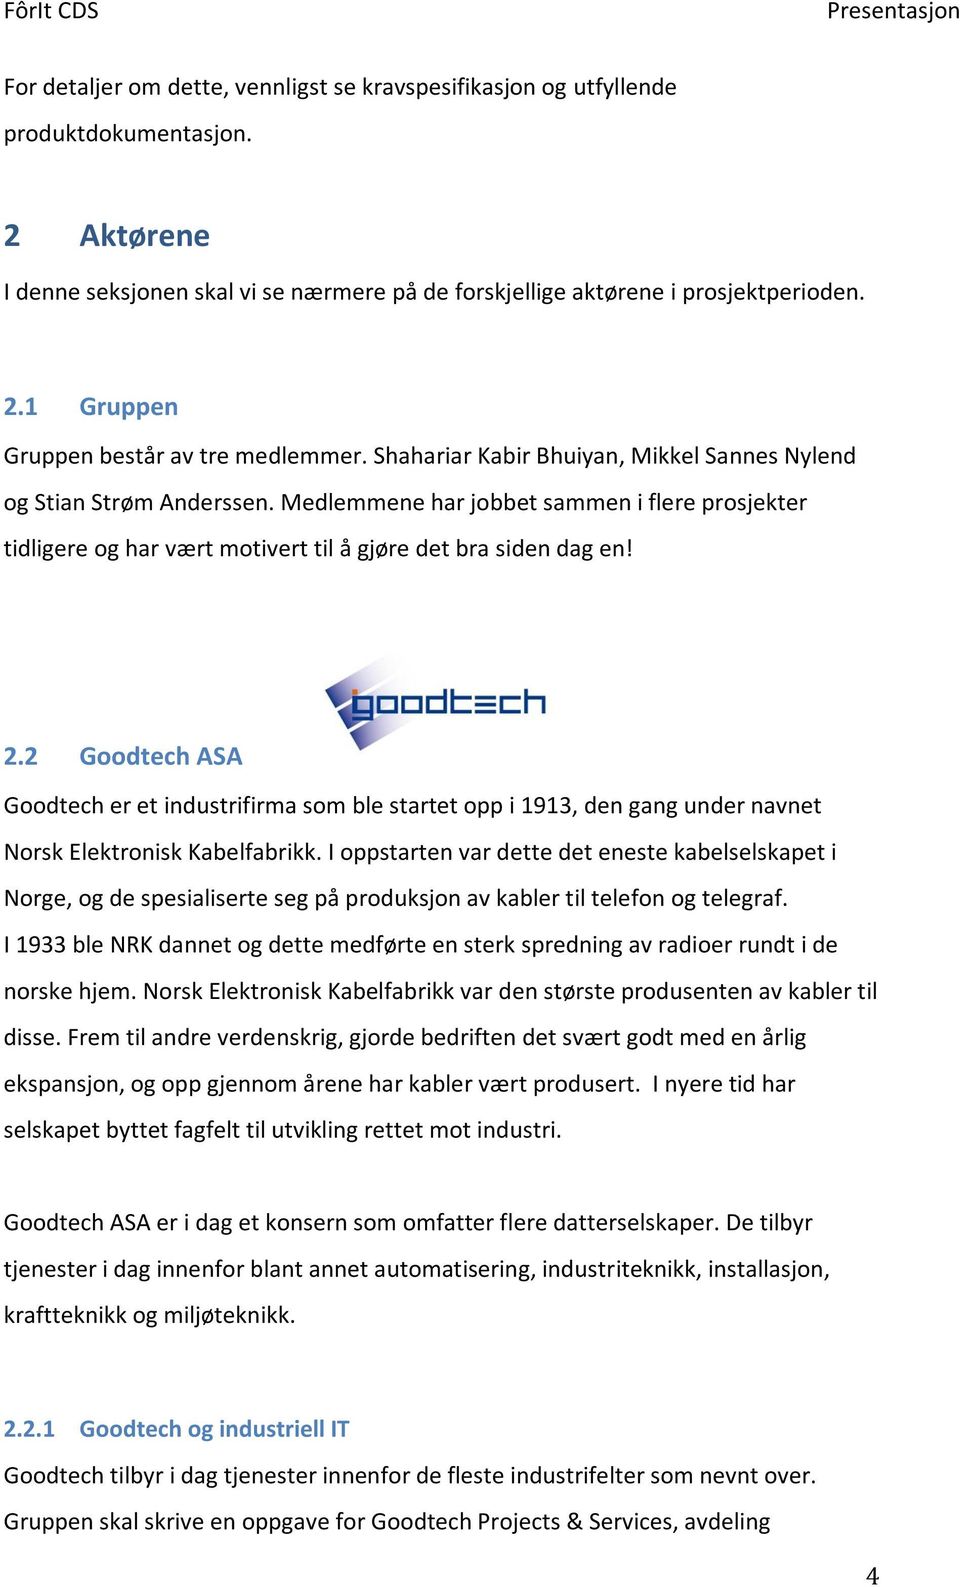 2 Goodtech ASA Goodtech er et industrifirma som ble startet opp i 1913, den gang under navnet Norsk Elektronisk Kabelfabrikk.